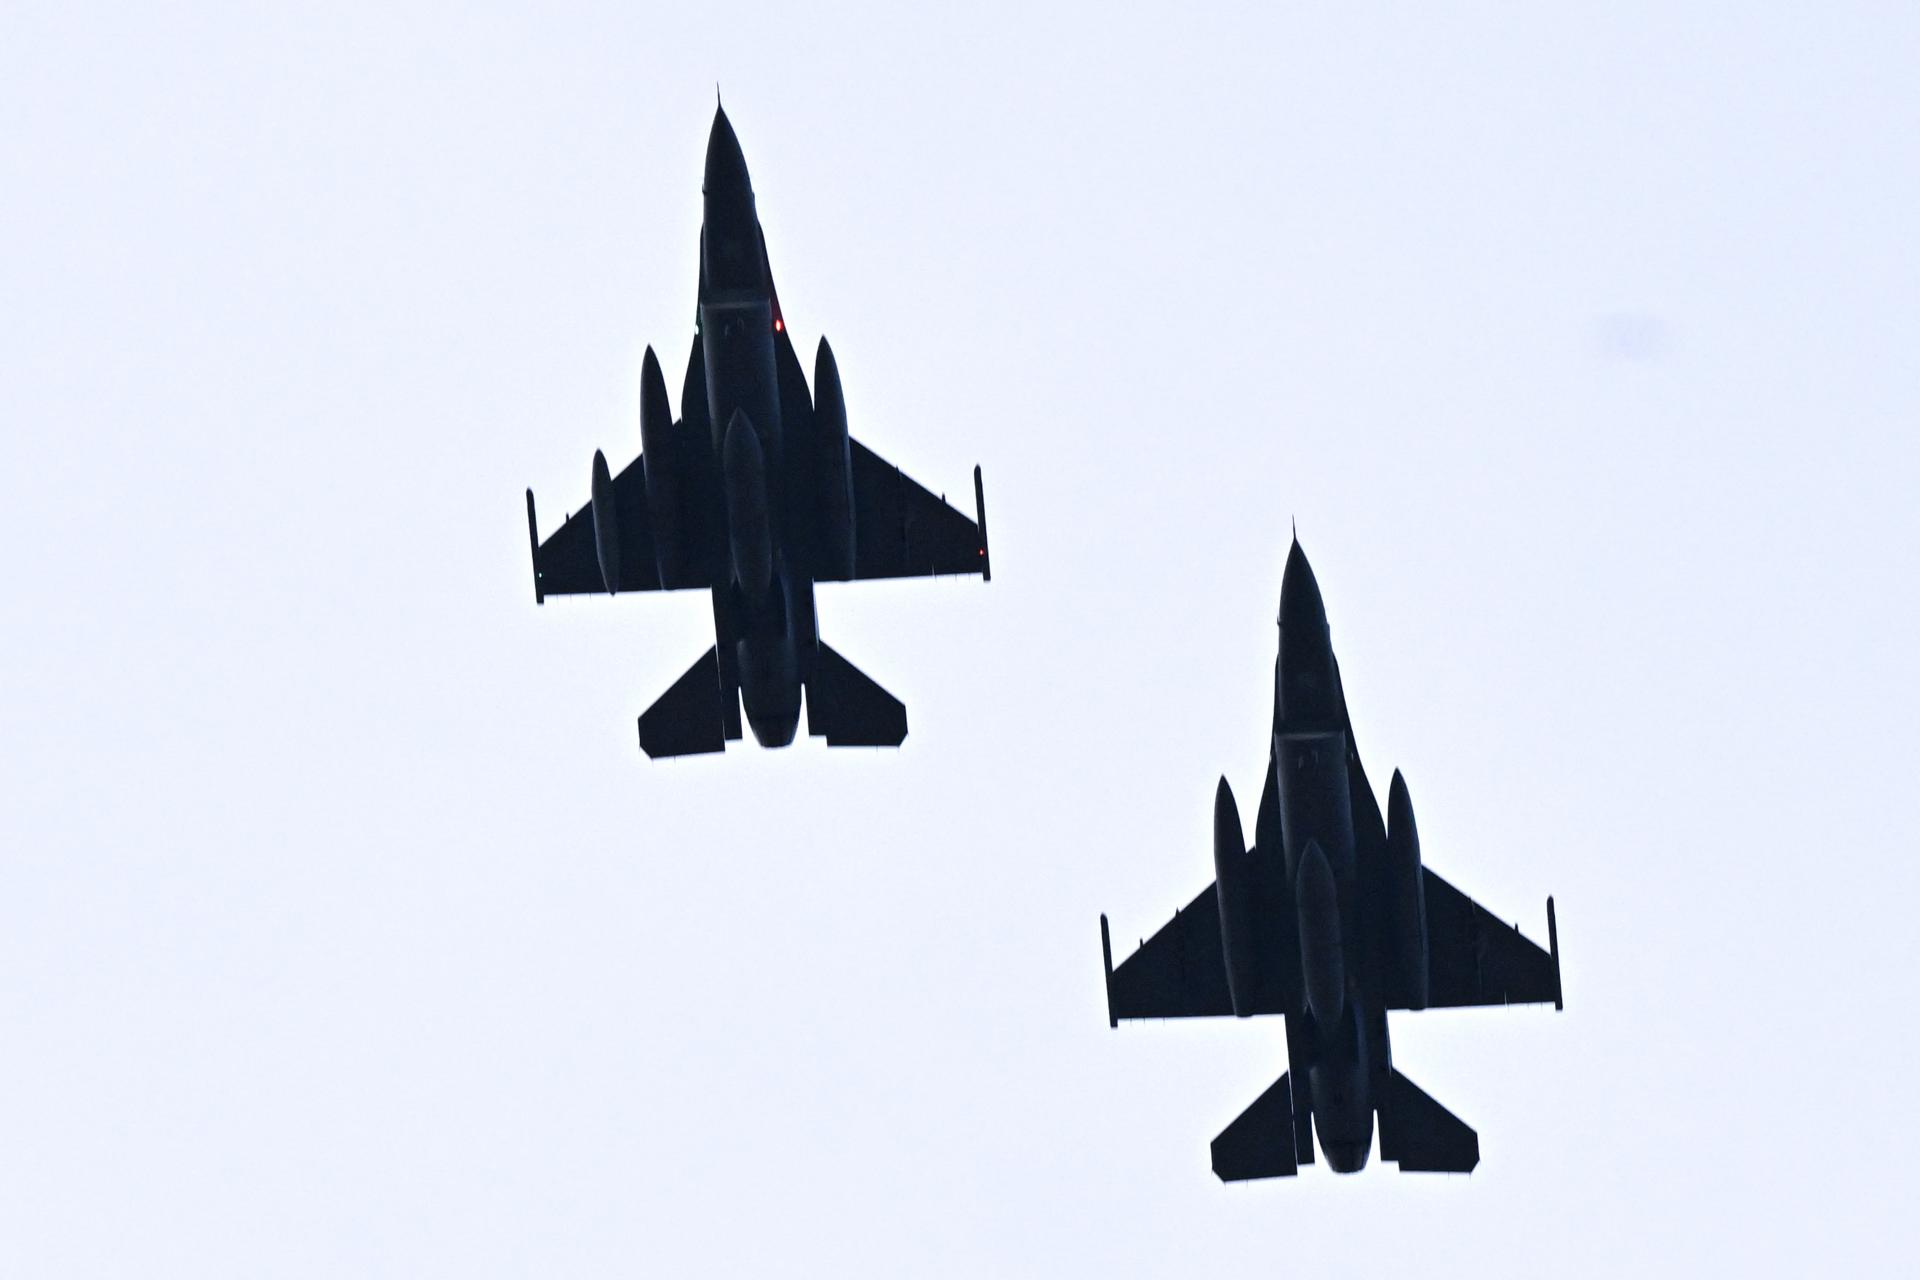 Tretia stíhačka F-16 by mala prísť v októbri, ďalších päť v roku 2025, potvrdil Kaliňák